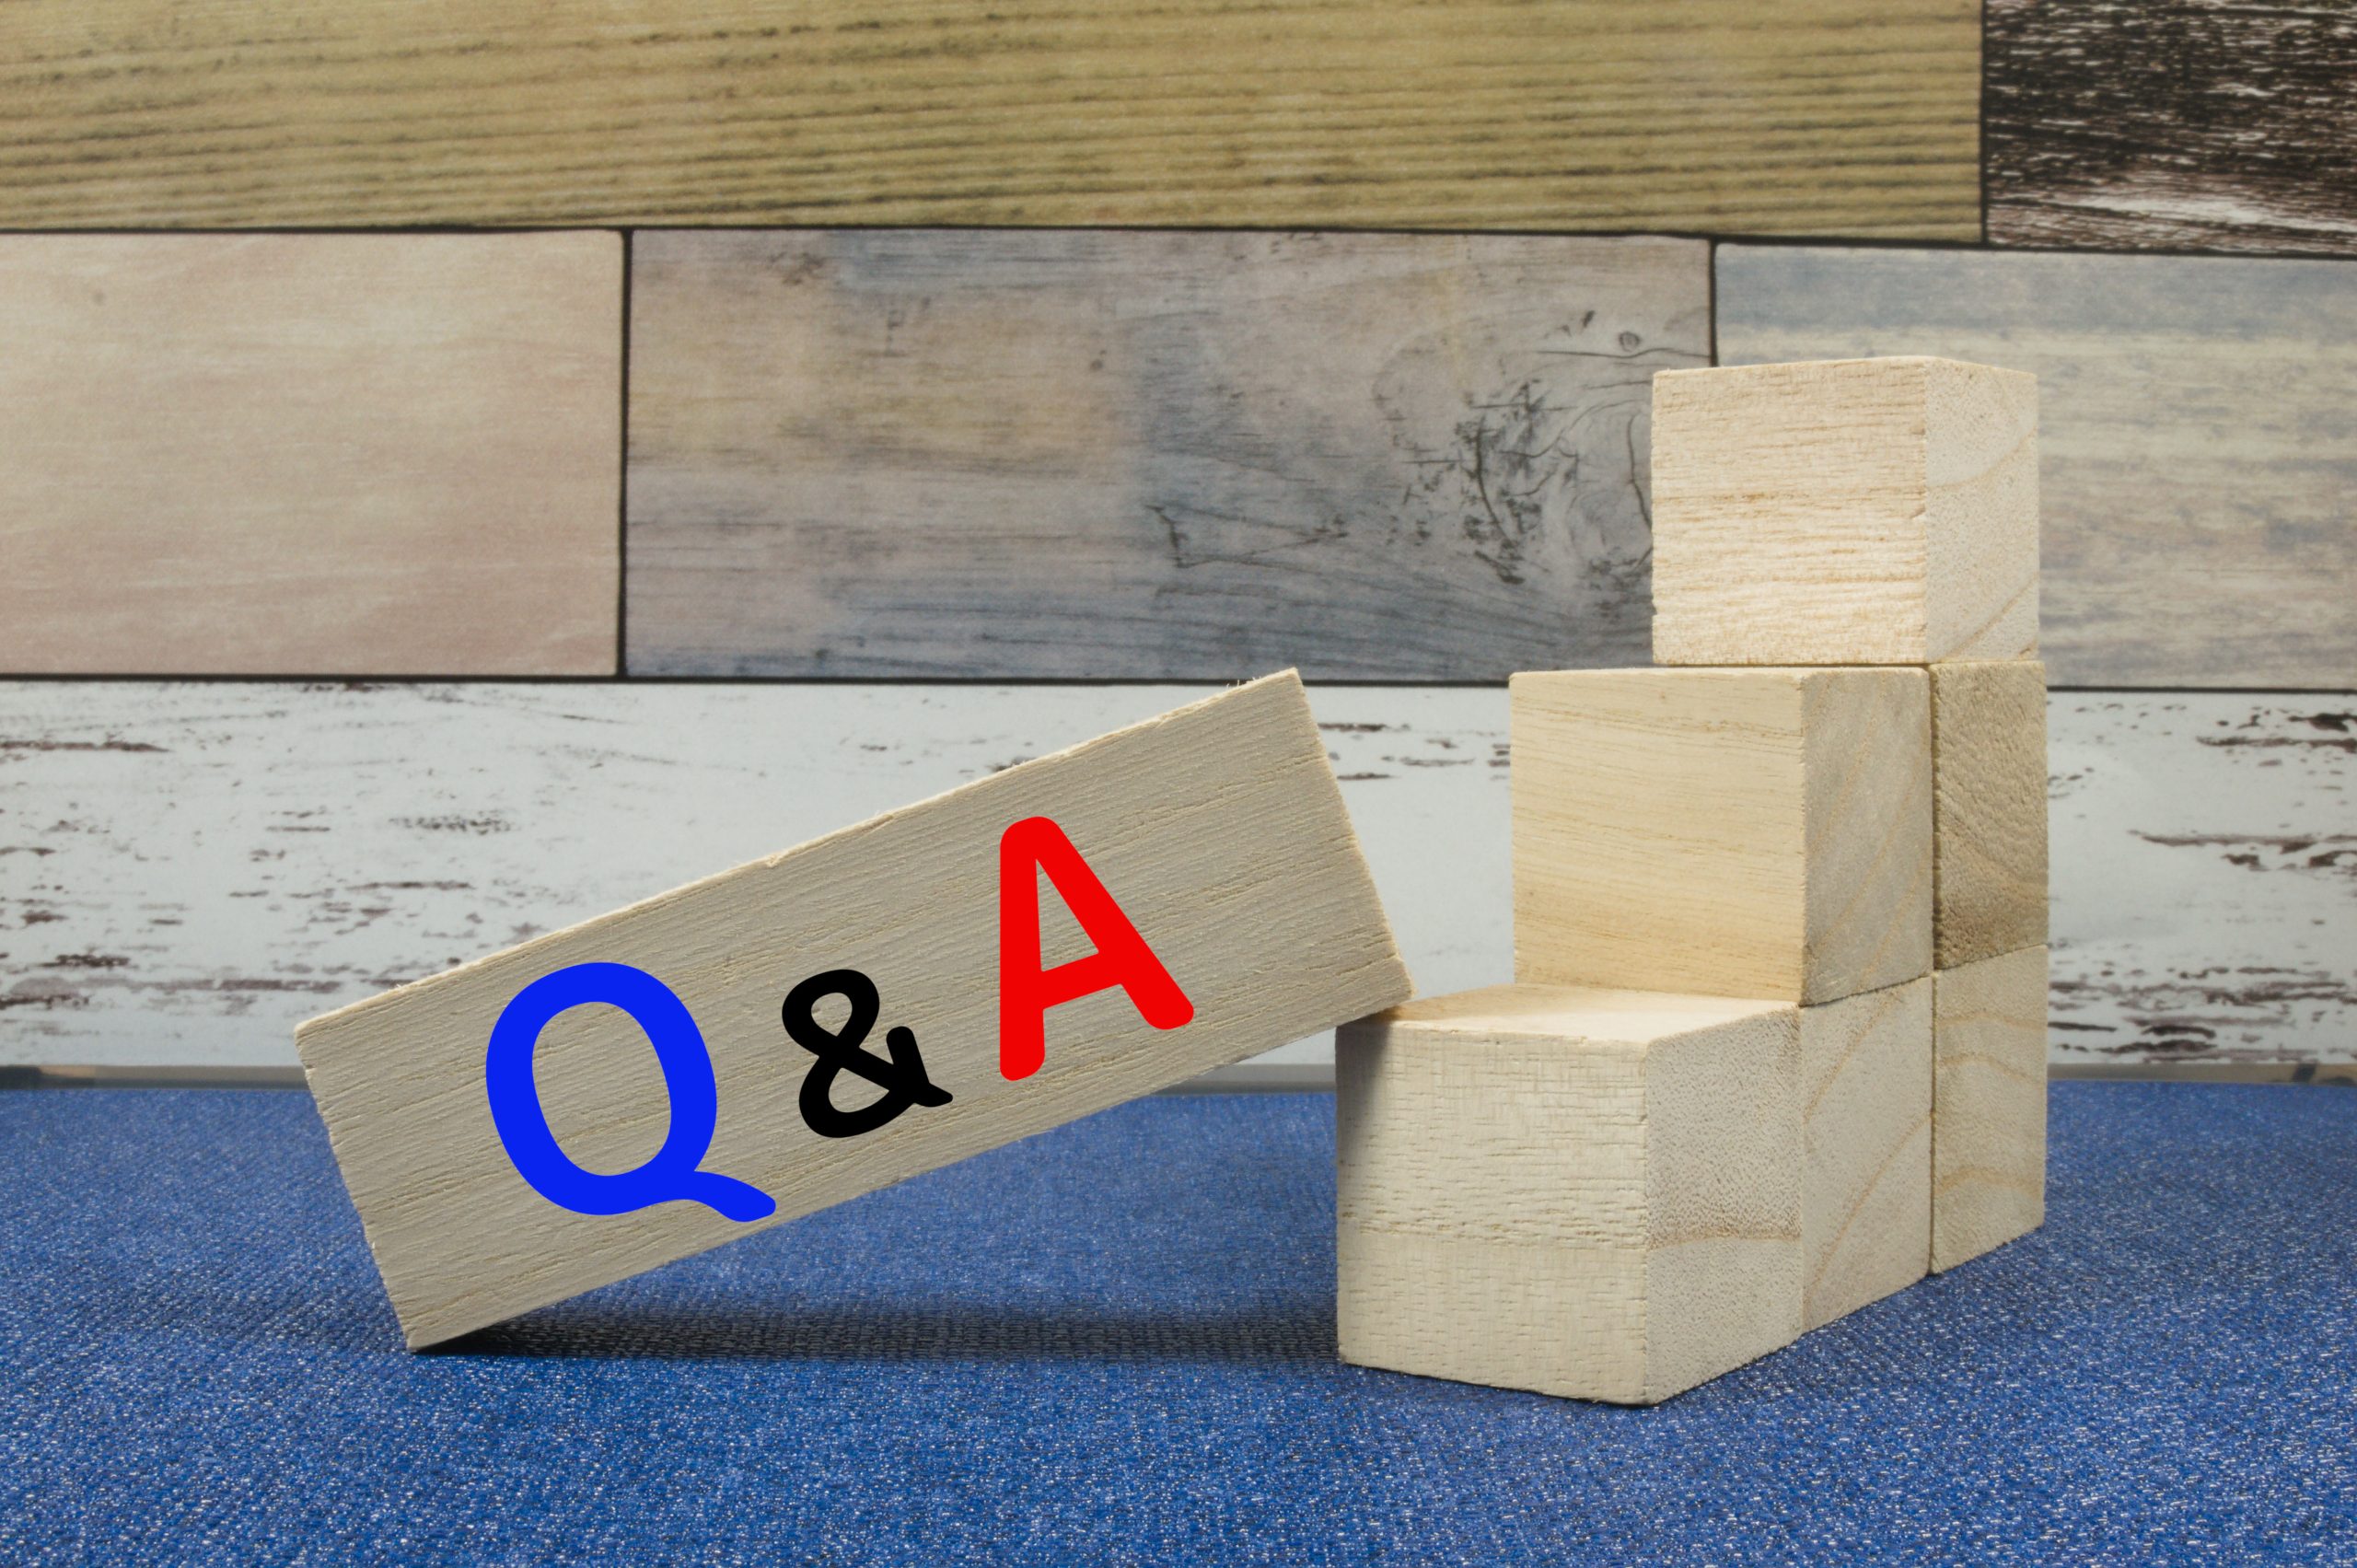 Q&Aと書かれた木のブロックのイメージ写真